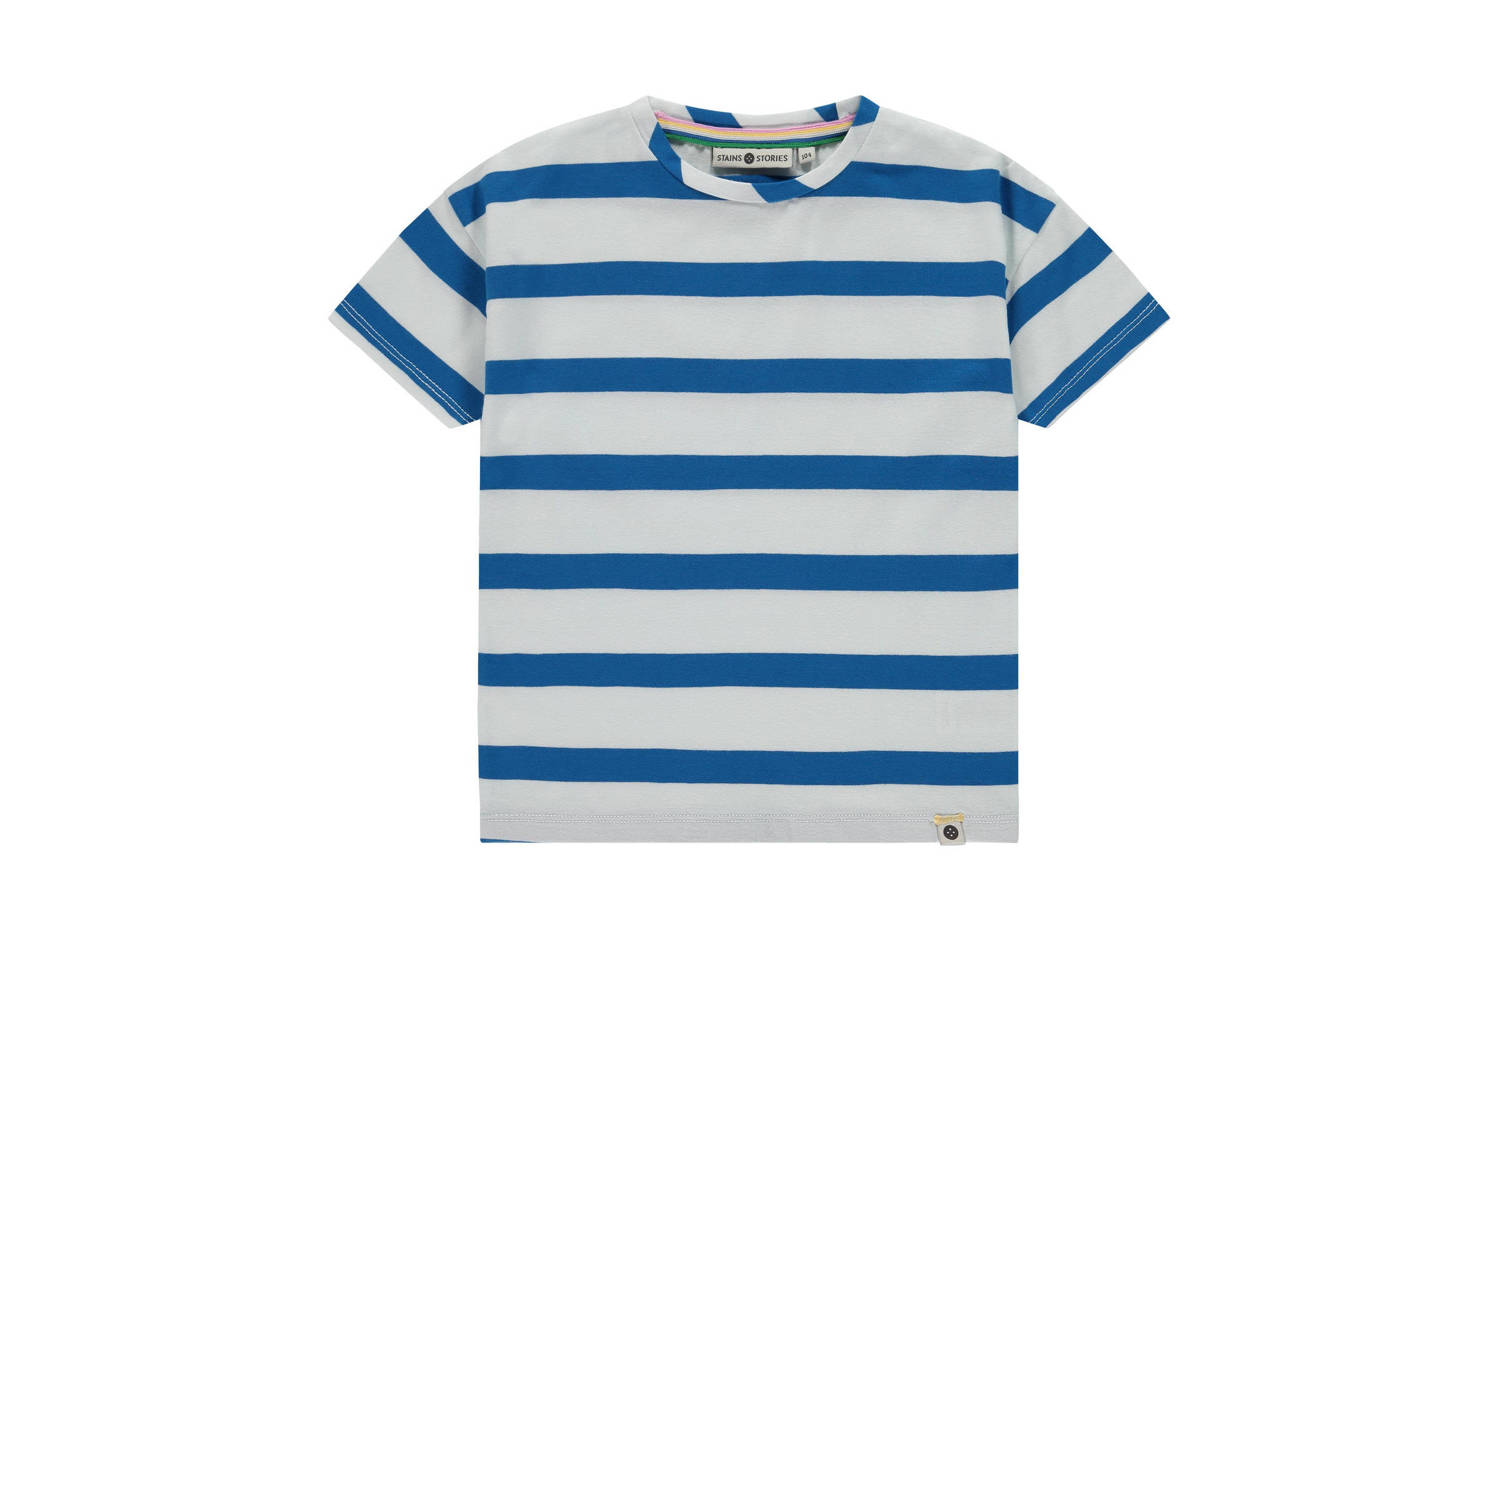 Stains&Stories gestreept T-shirt blauw grijs Jongens Stretchkatoen Ronde hals 104